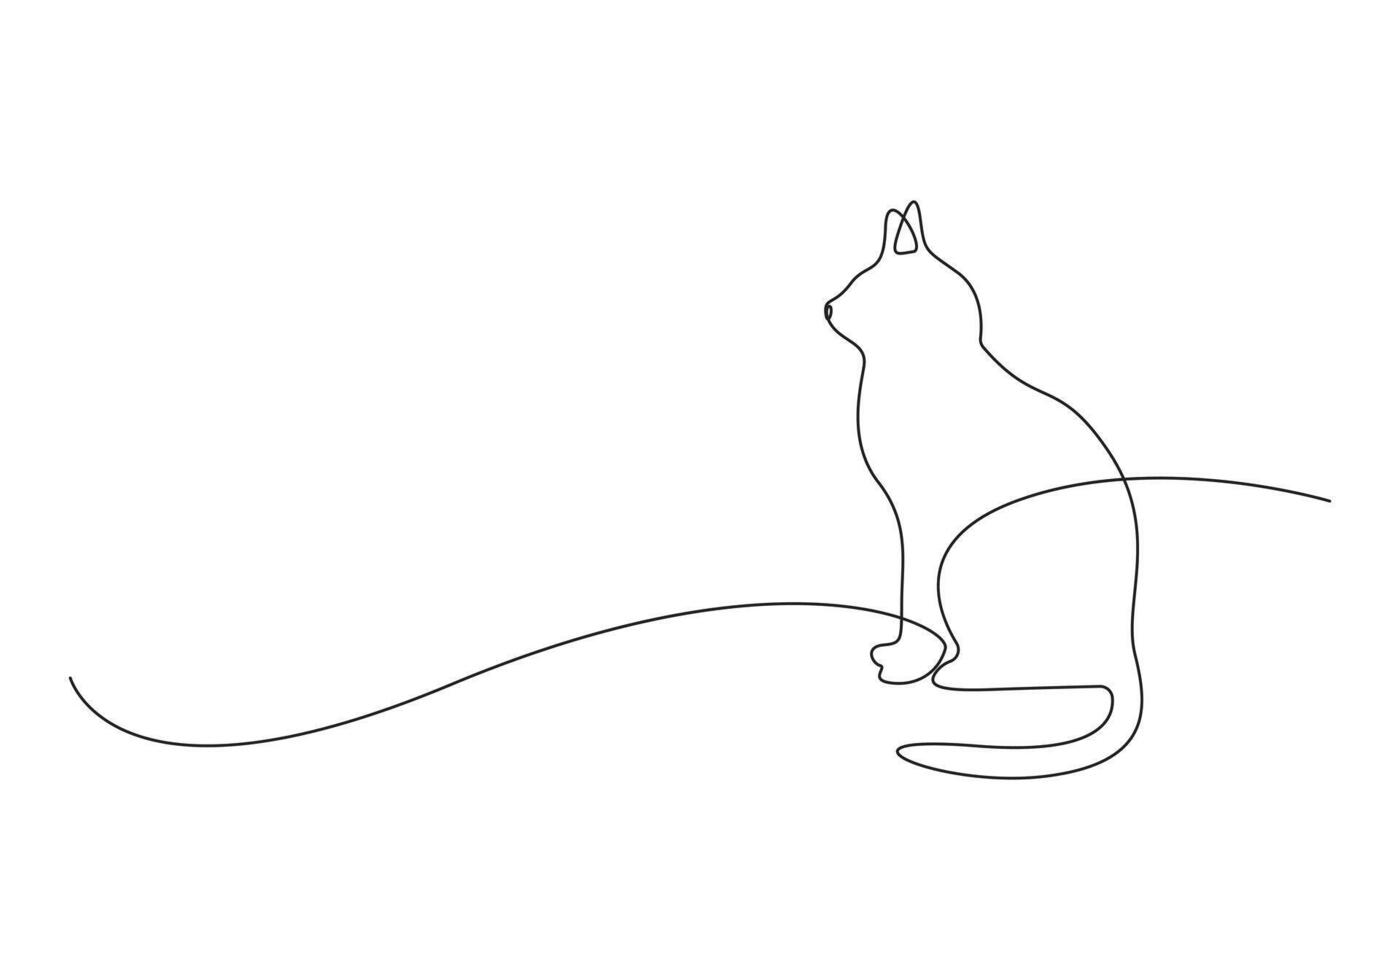 gato en uno continuo línea dibujo prima ilustración vector